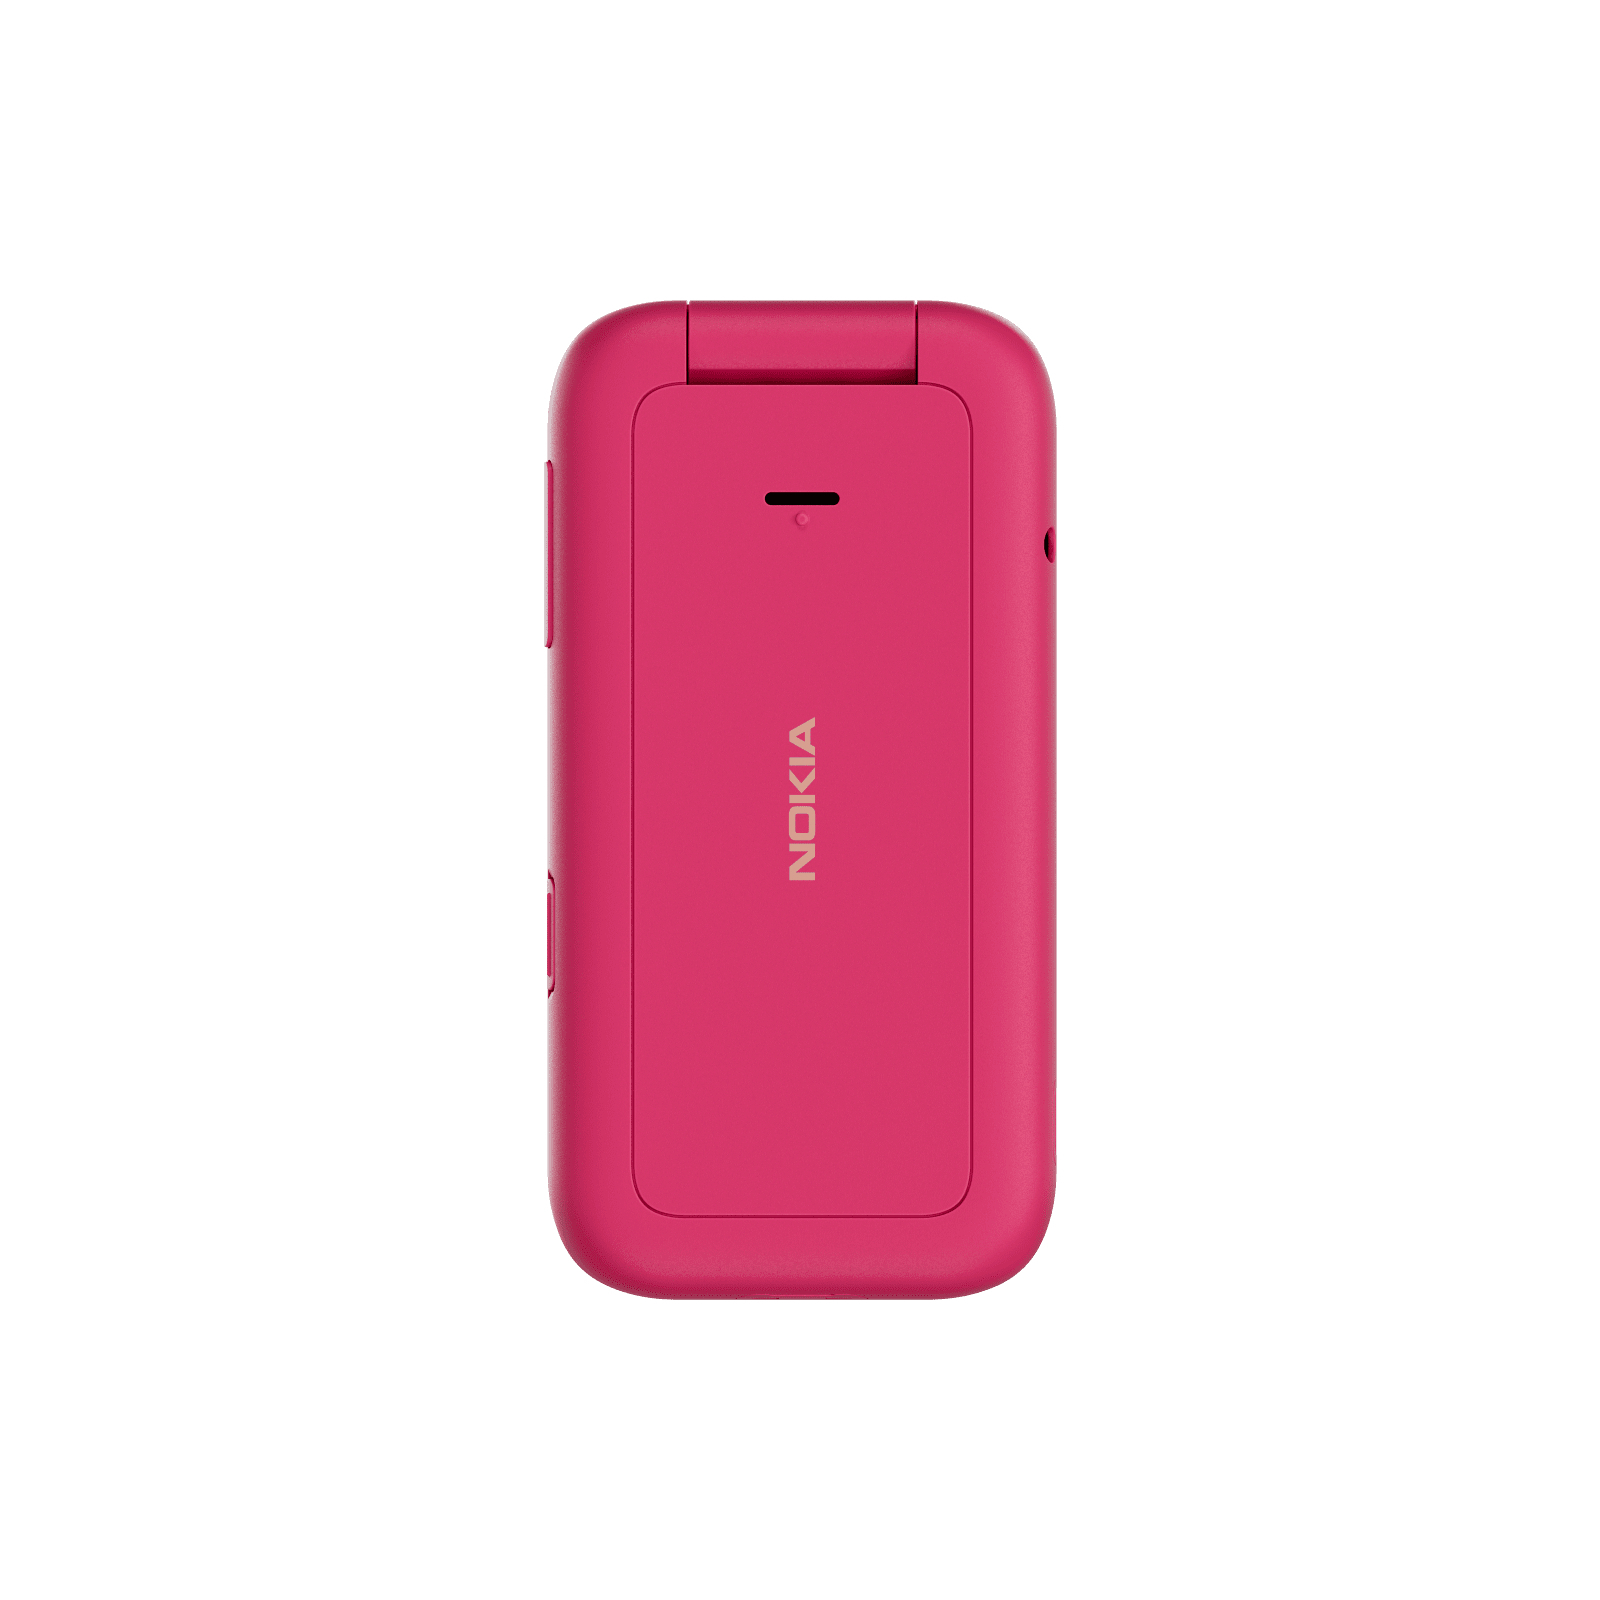 Мобільний телефон Nokia 2660 Flip Pink зображення 3